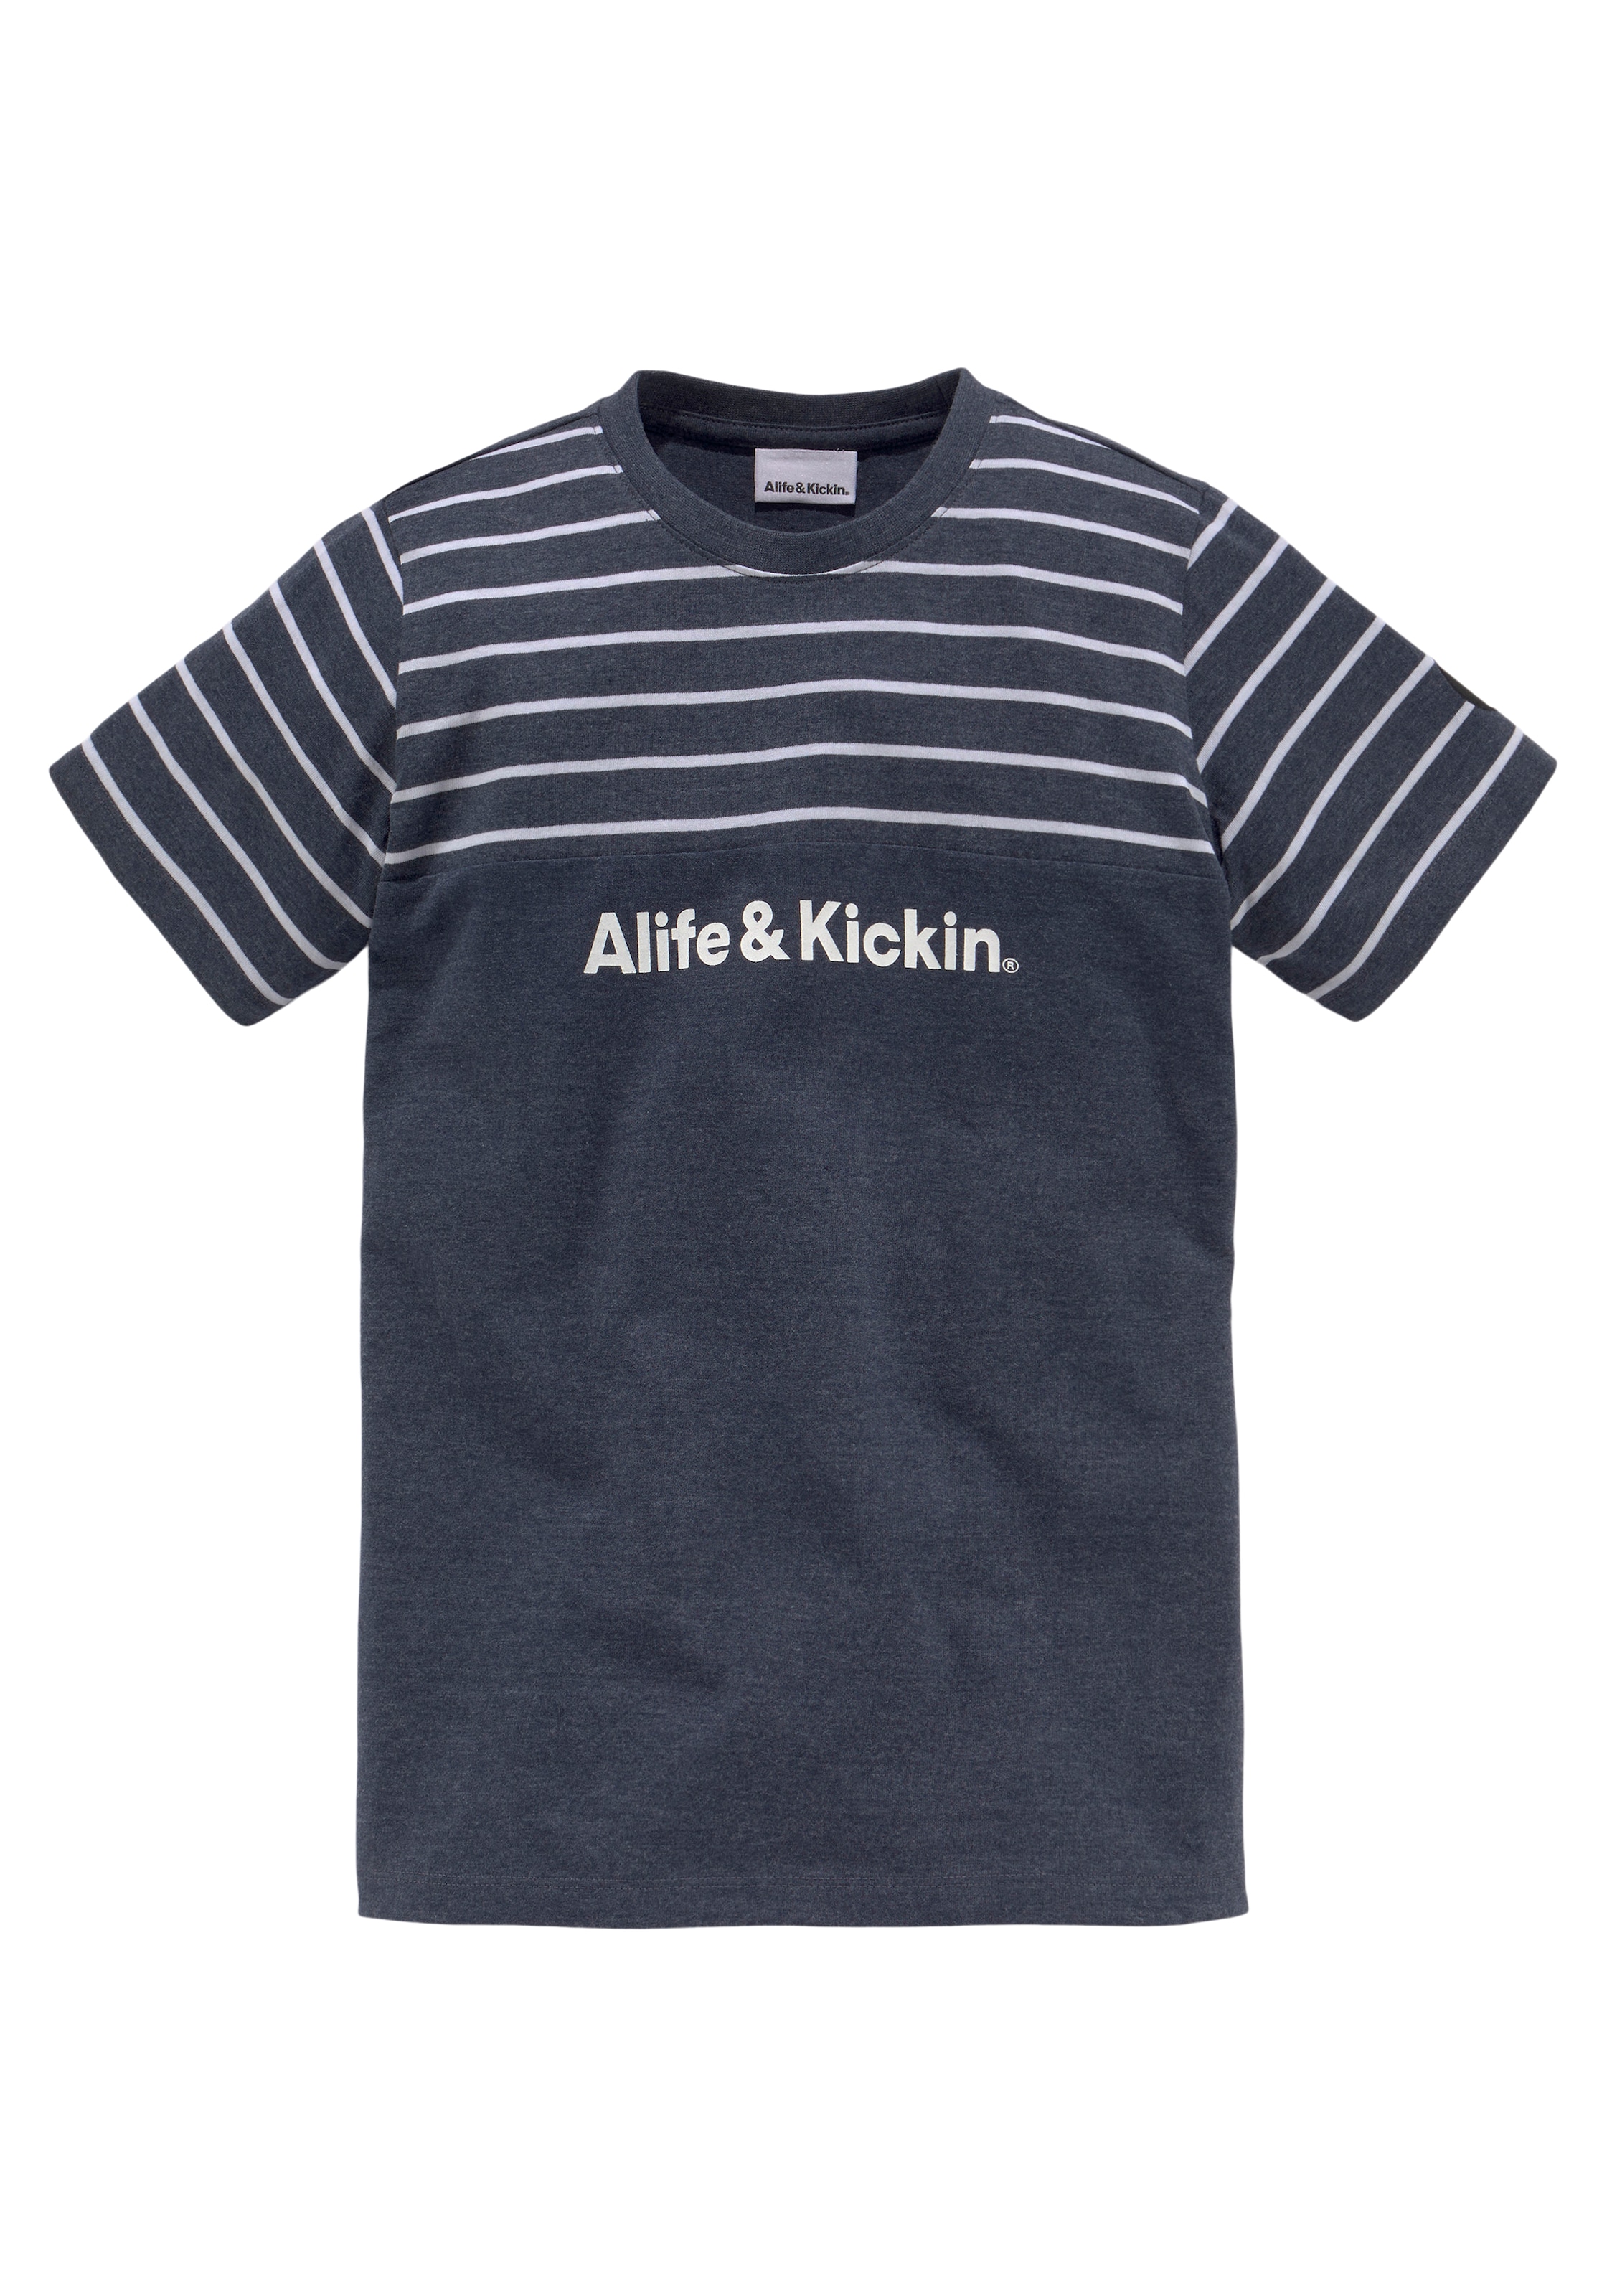 »Colorblocking«, Kickin NEUE in bei Ringel, MARKE! Qualität und melierter T-Shirt Alife garngefärbten &